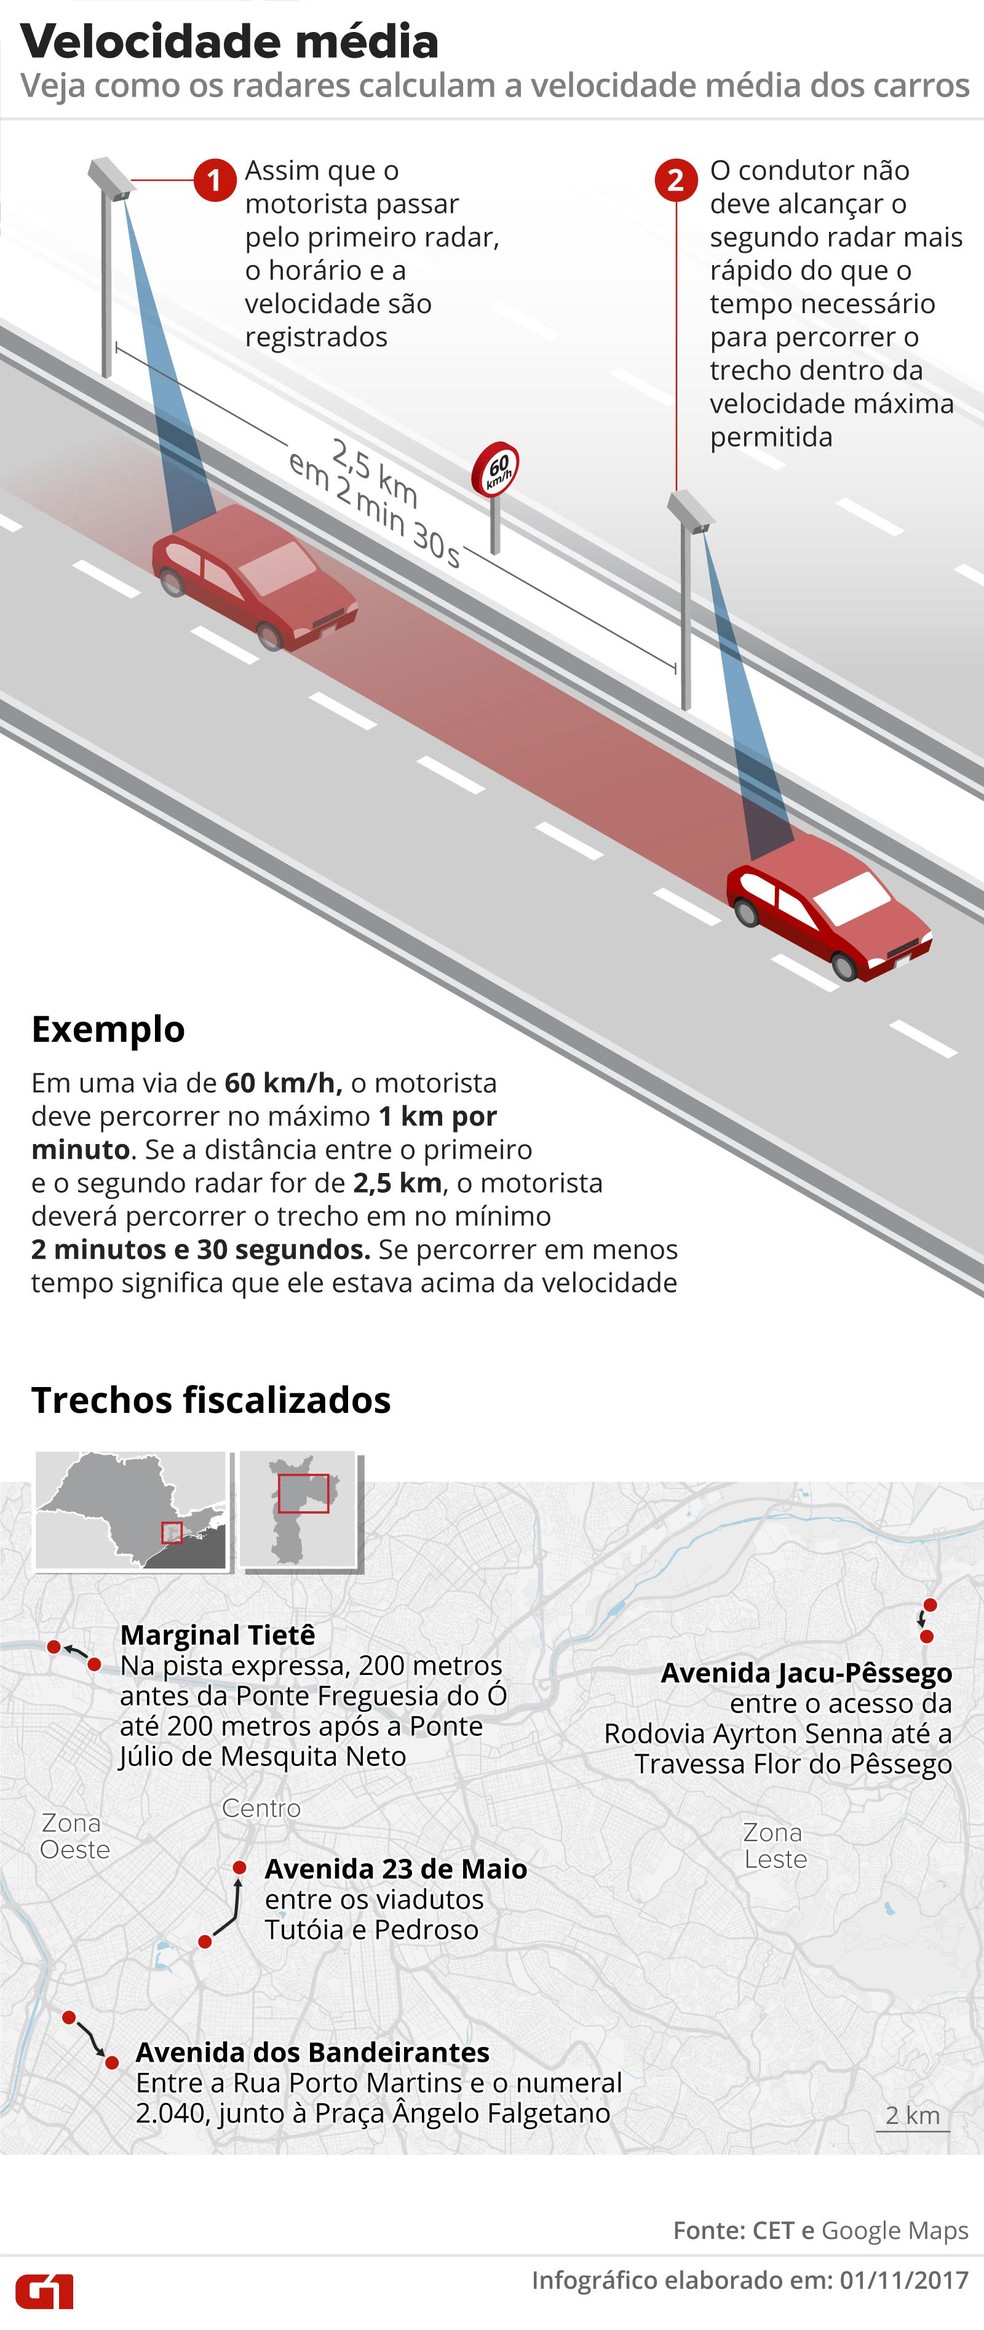 Veja como funciona o radar de velocidade média em São Paulo (Foto: Alexandre Mauro/Editoria de Arte/G1)